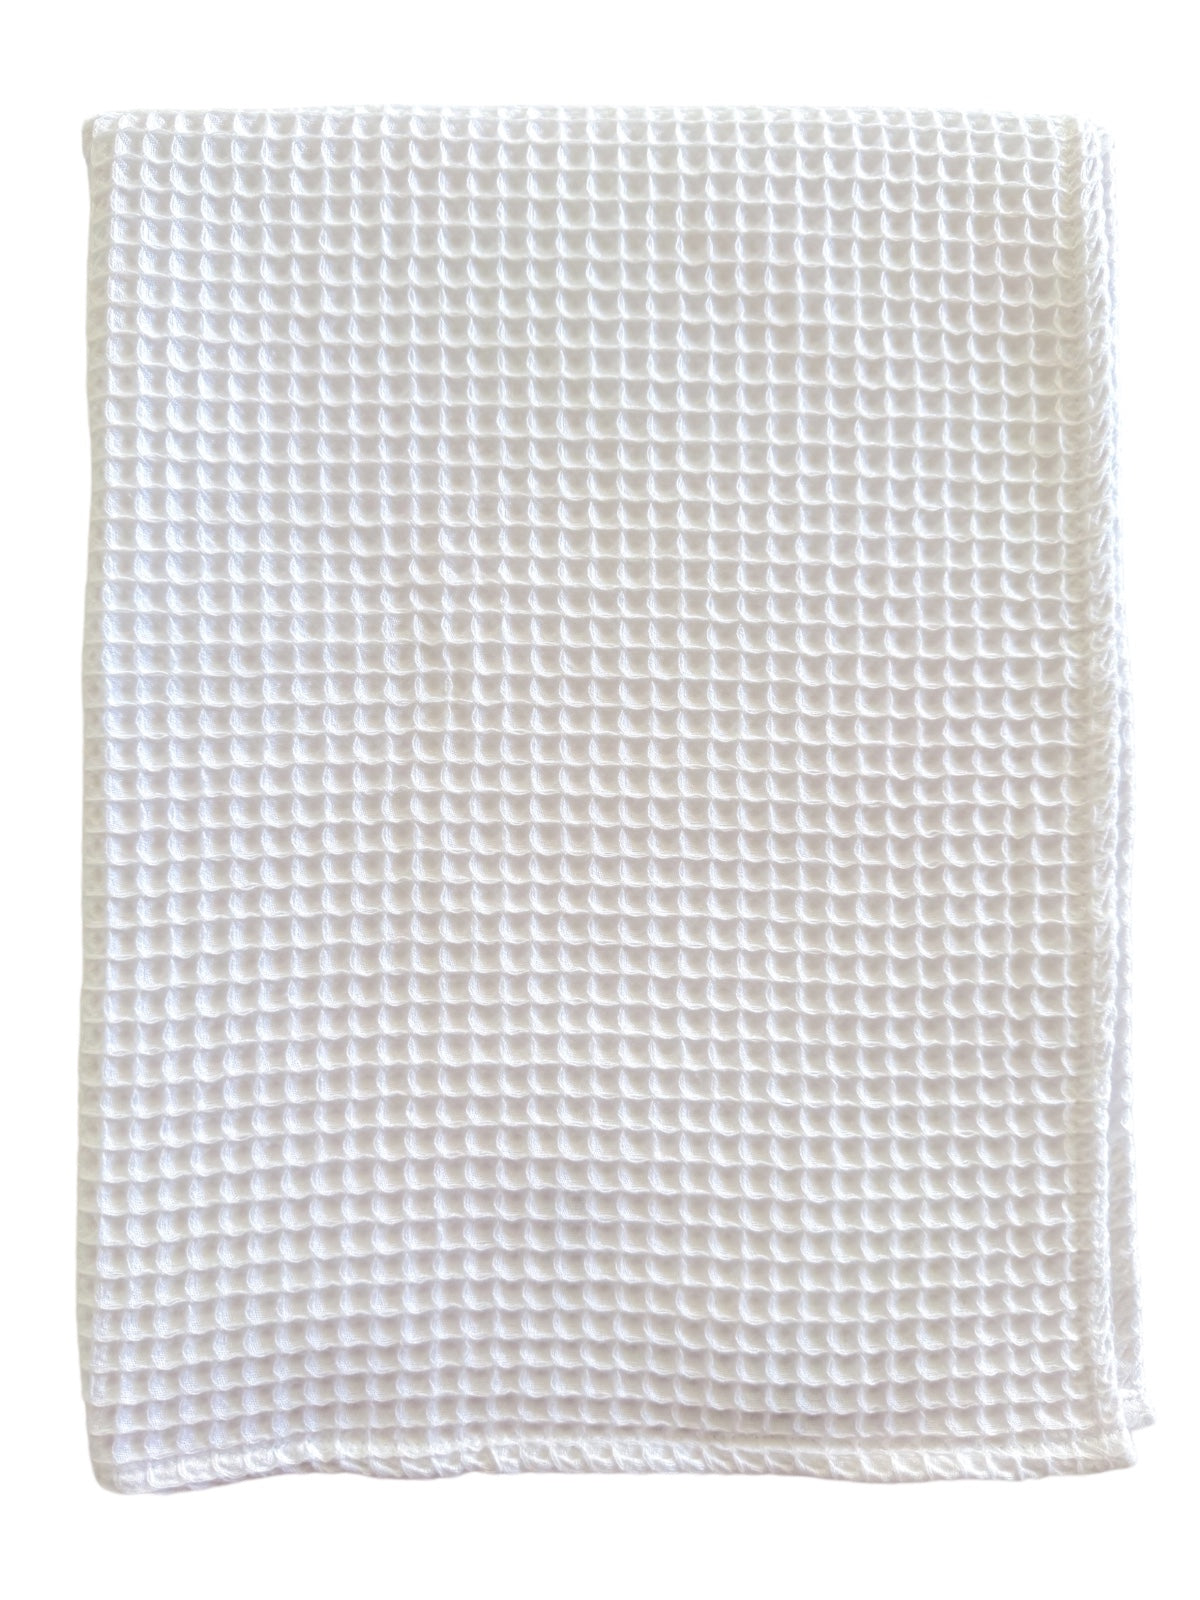 Phufy® Waffle Blanket, White